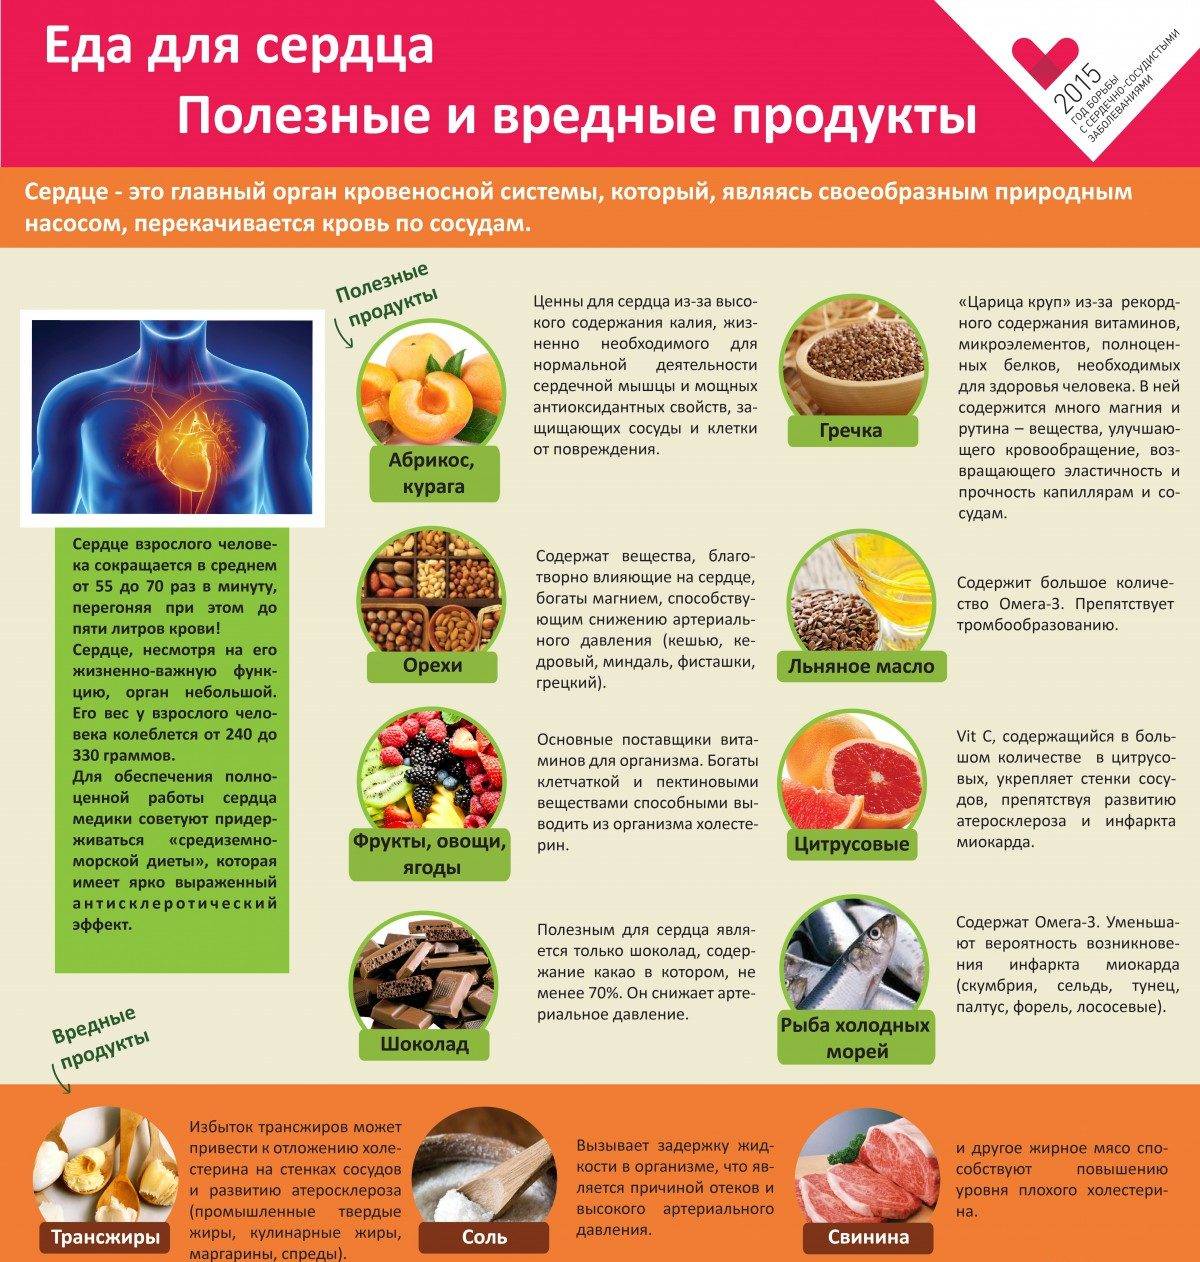 Продукты полезные для сердца и здоровья сосудов: фрукты, овощи, еда для диеты укрепляющей сердечную мышцу